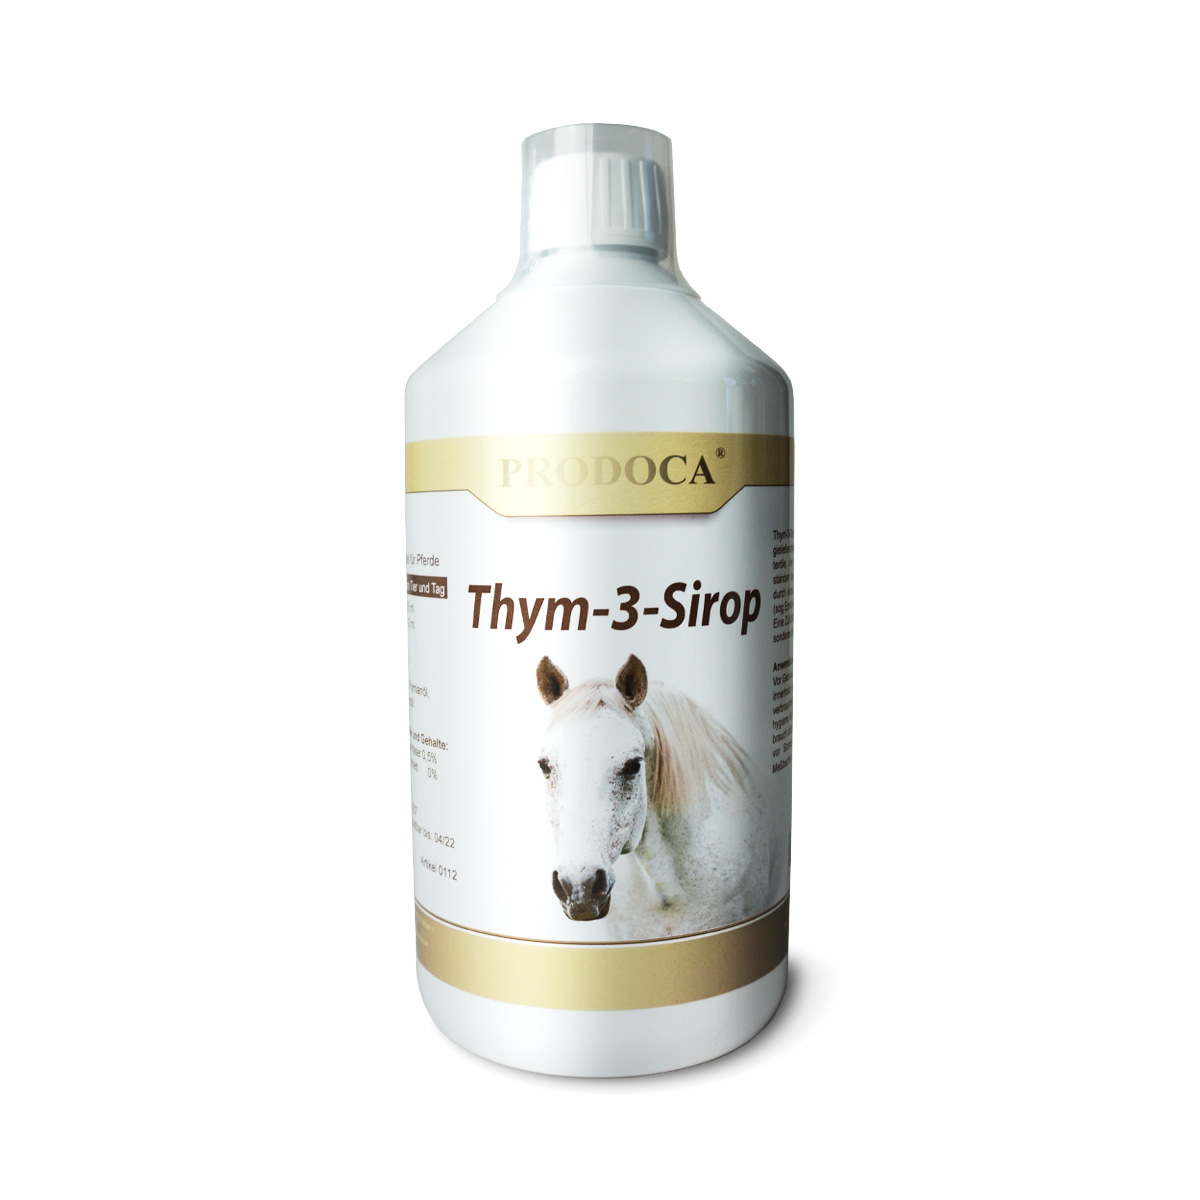 Prodoca Thym-3-Sirop- Immunsystem Pferd